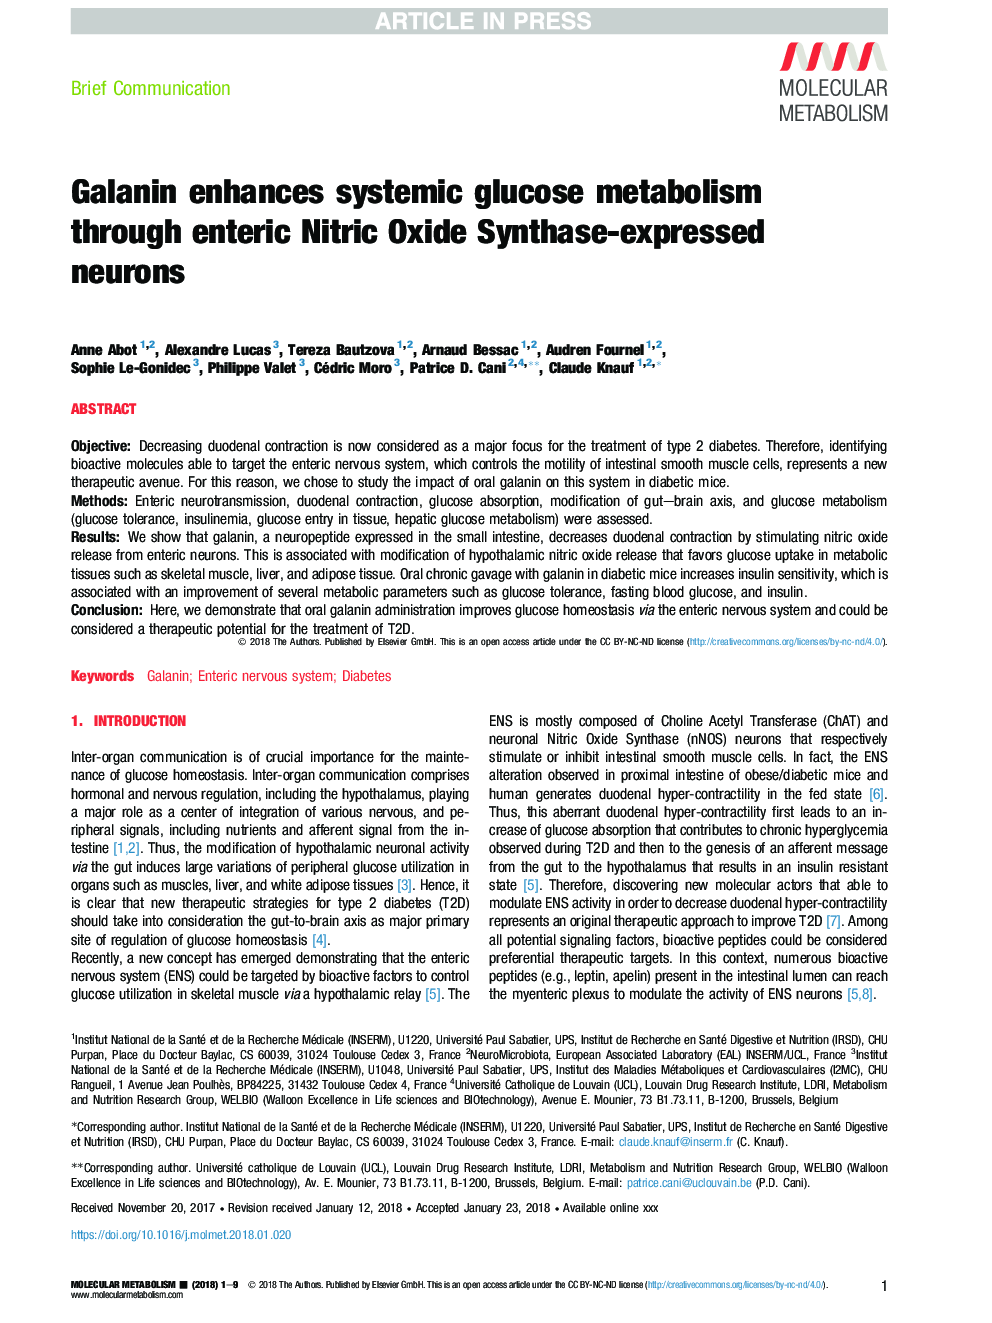 گالانین، متابولیسم سیستماتیک گلوکز را از طریق نورونهای بیان شده توسط نیتریک اکسید سینتاز، به وجود می آورد 